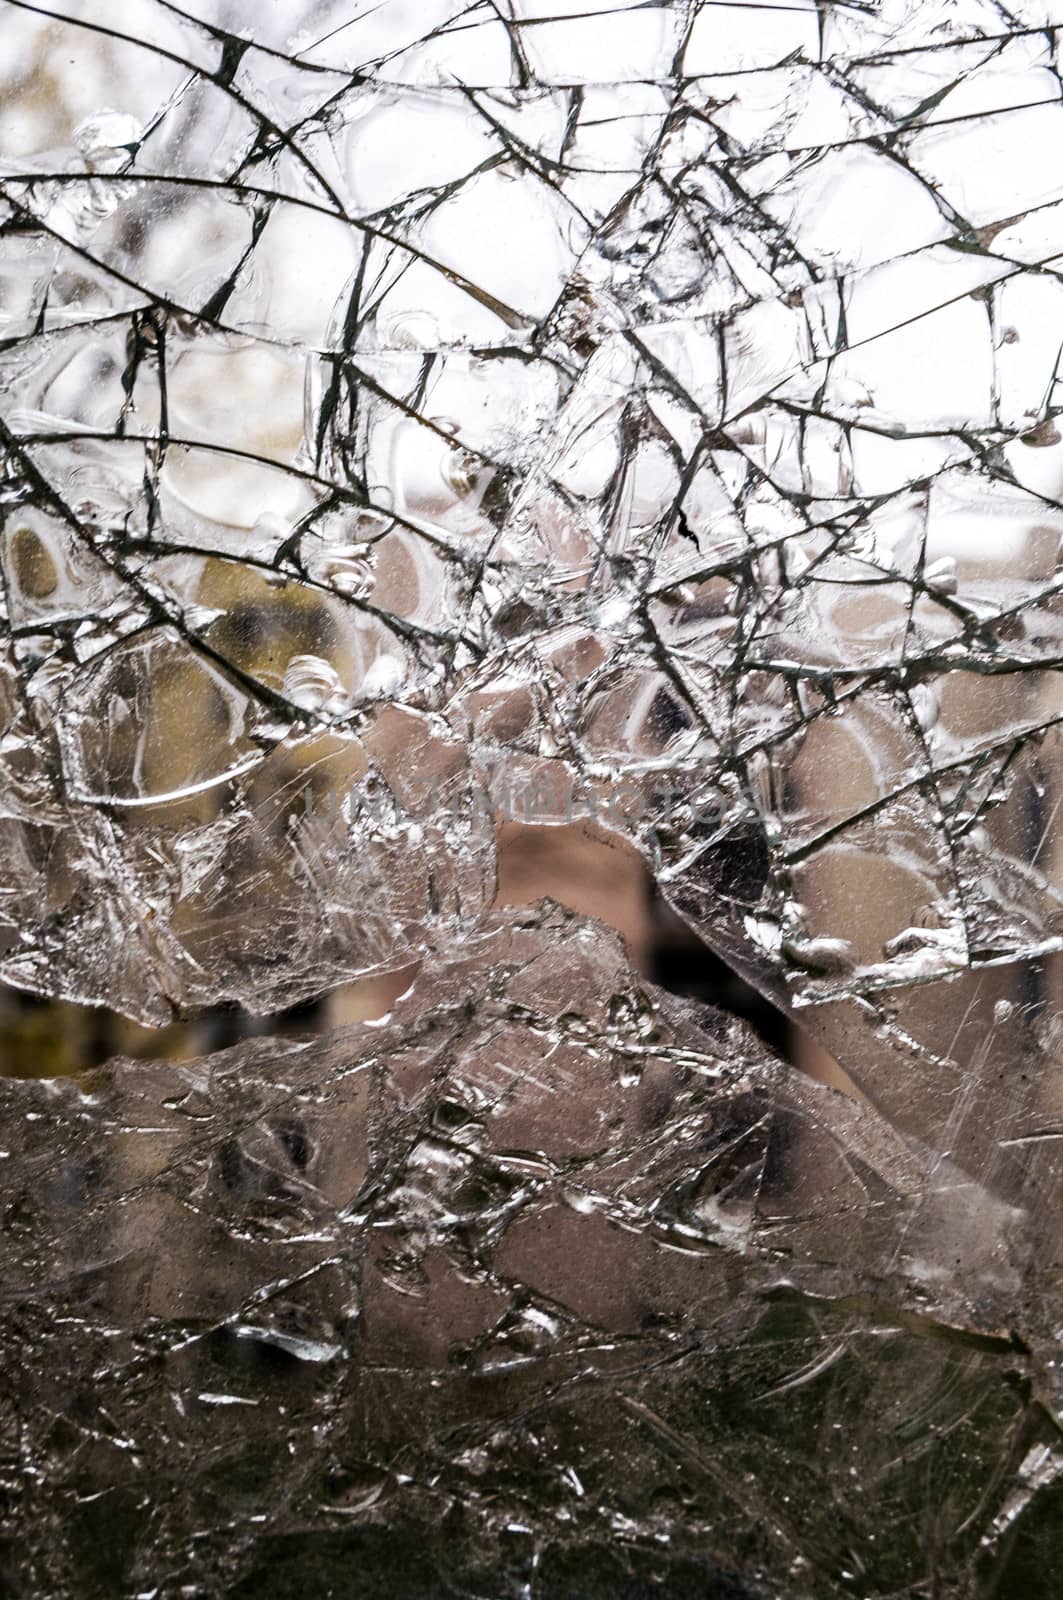 Broken glass by Jule_Berlin